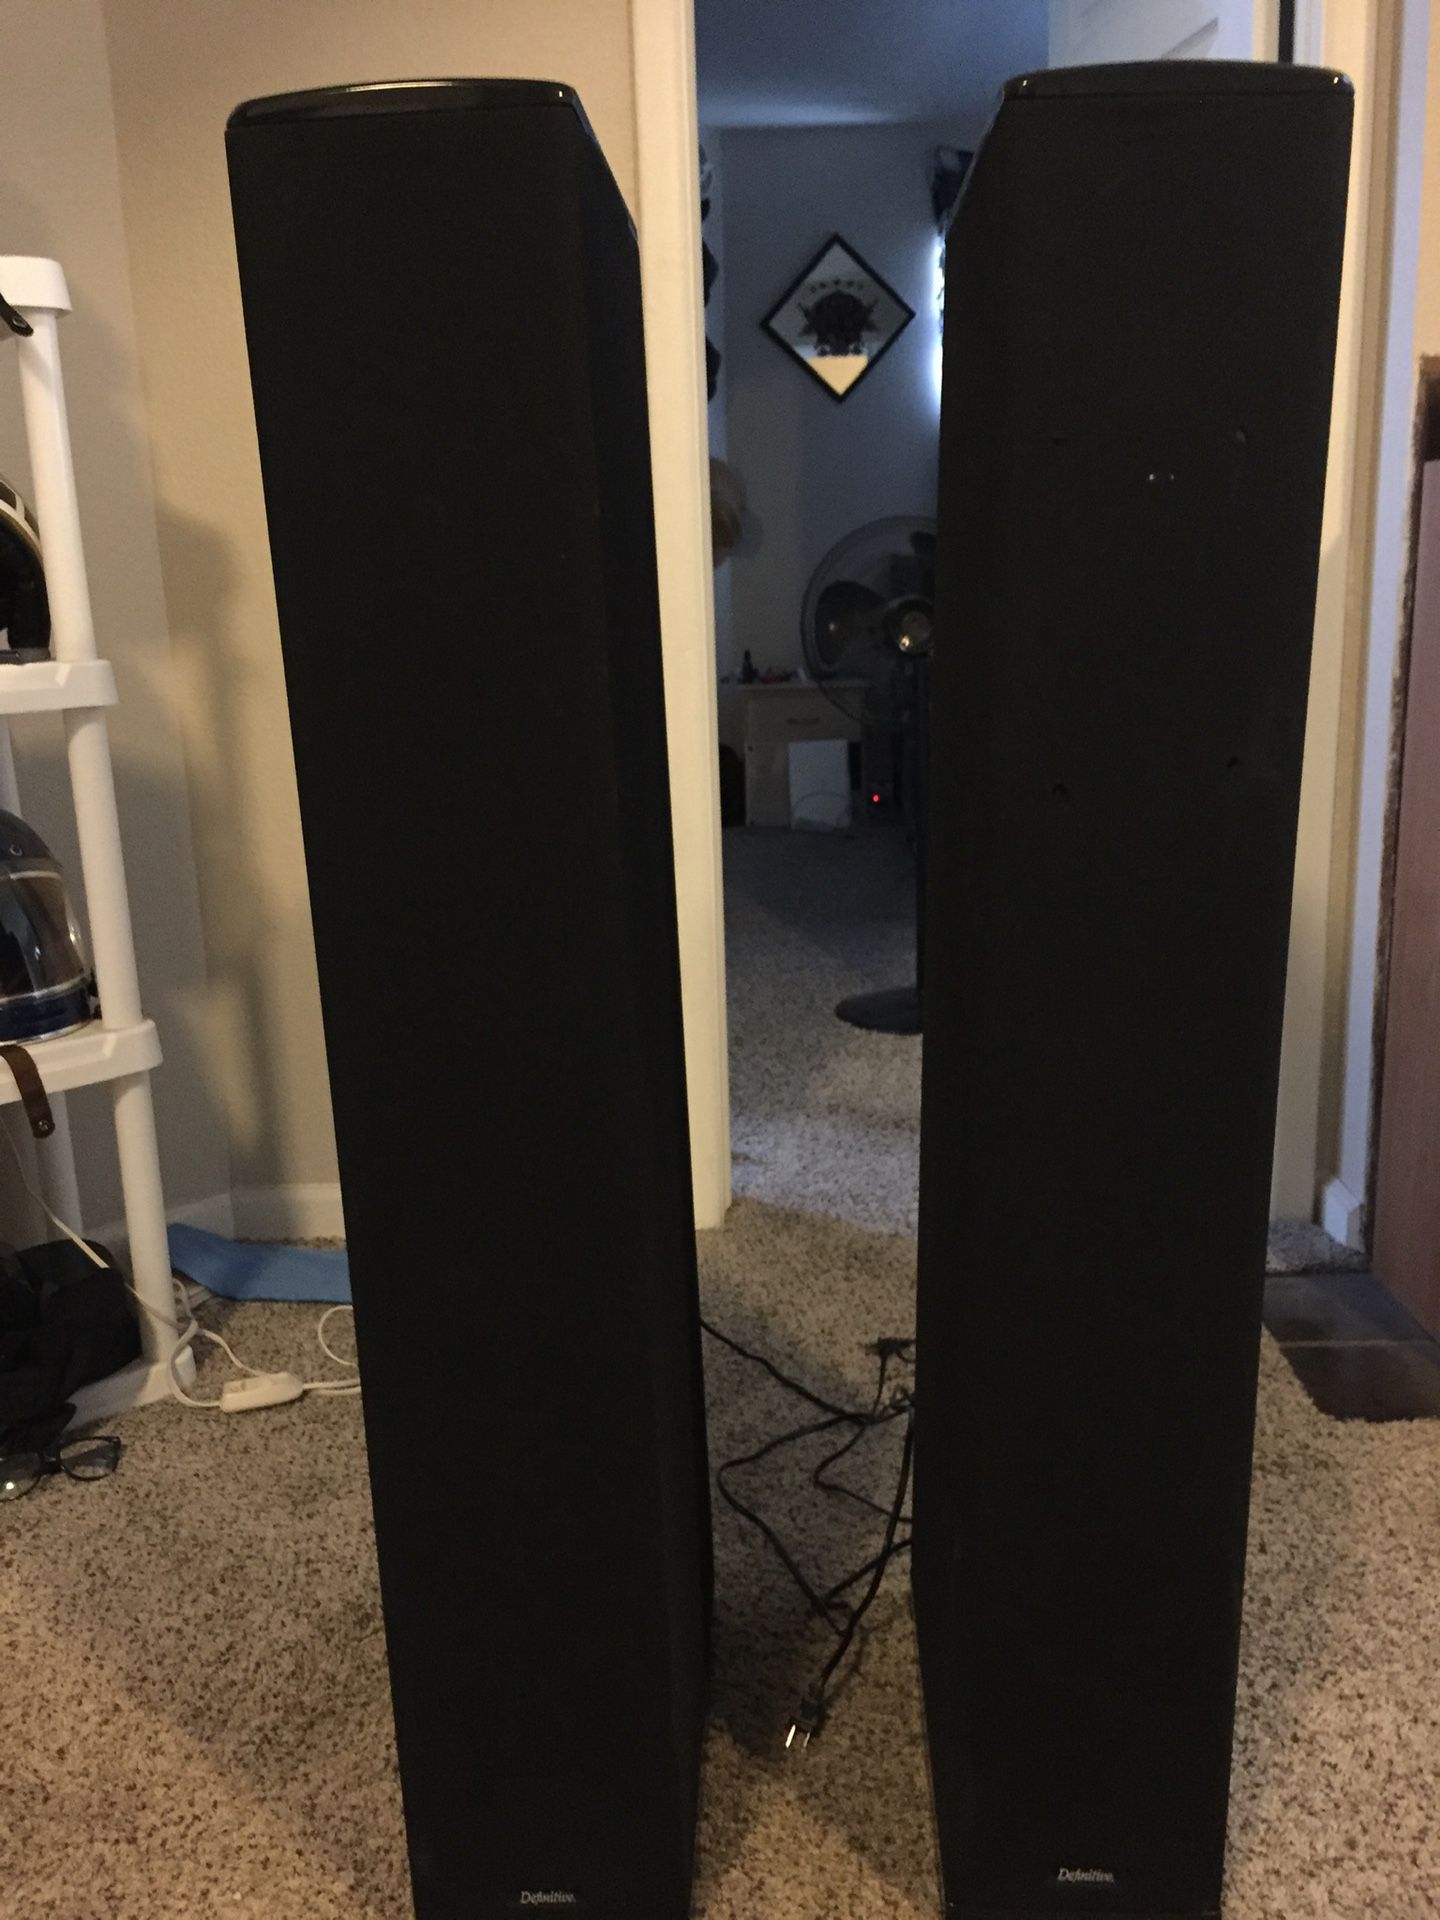 Surround sound tower speakers